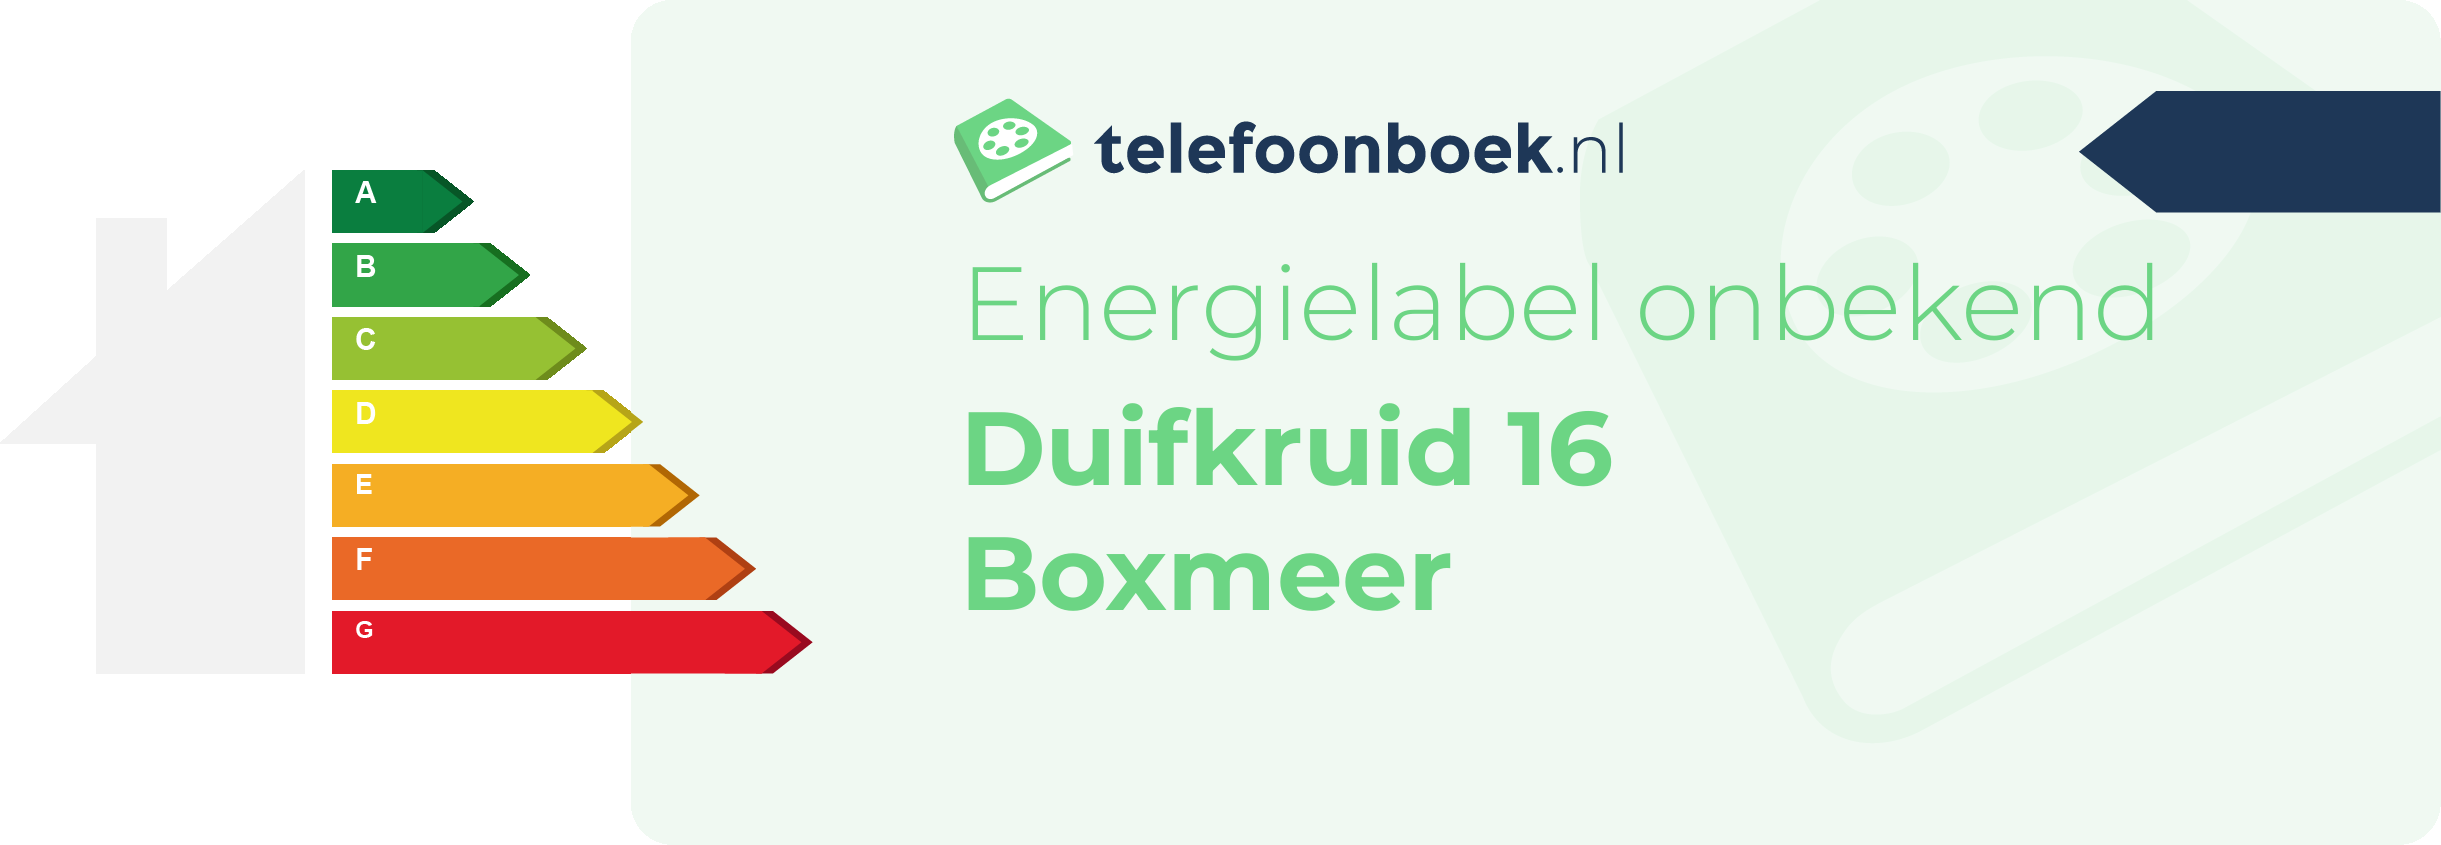 Energielabel Duifkruid 16 Boxmeer